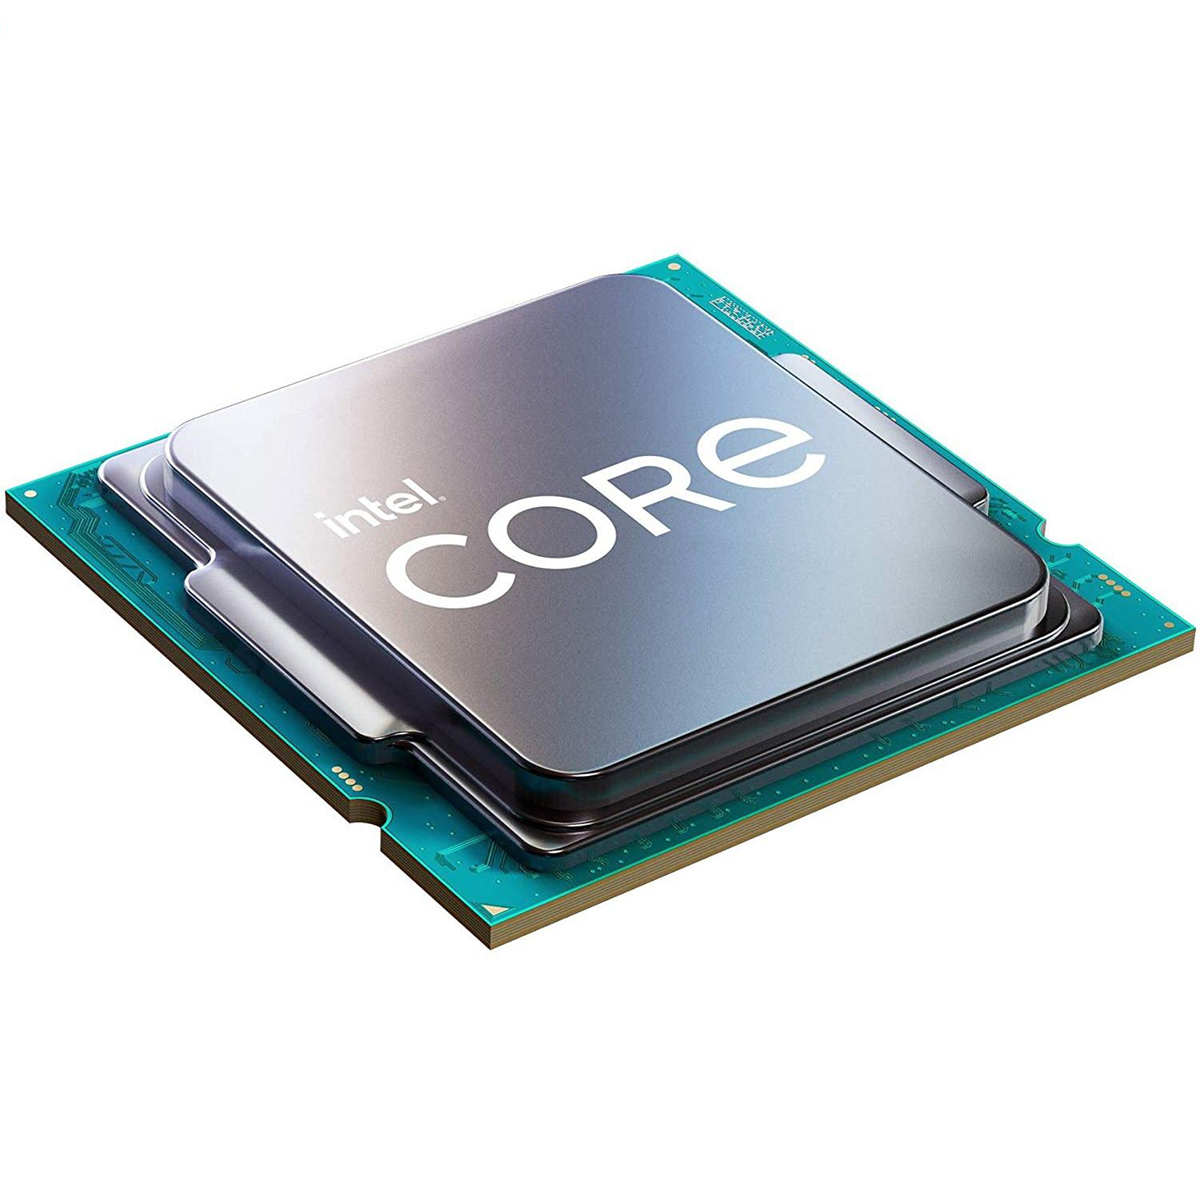 پردازنده مرکزی اینتل سری Skylake مدل Core i7-6700 تری